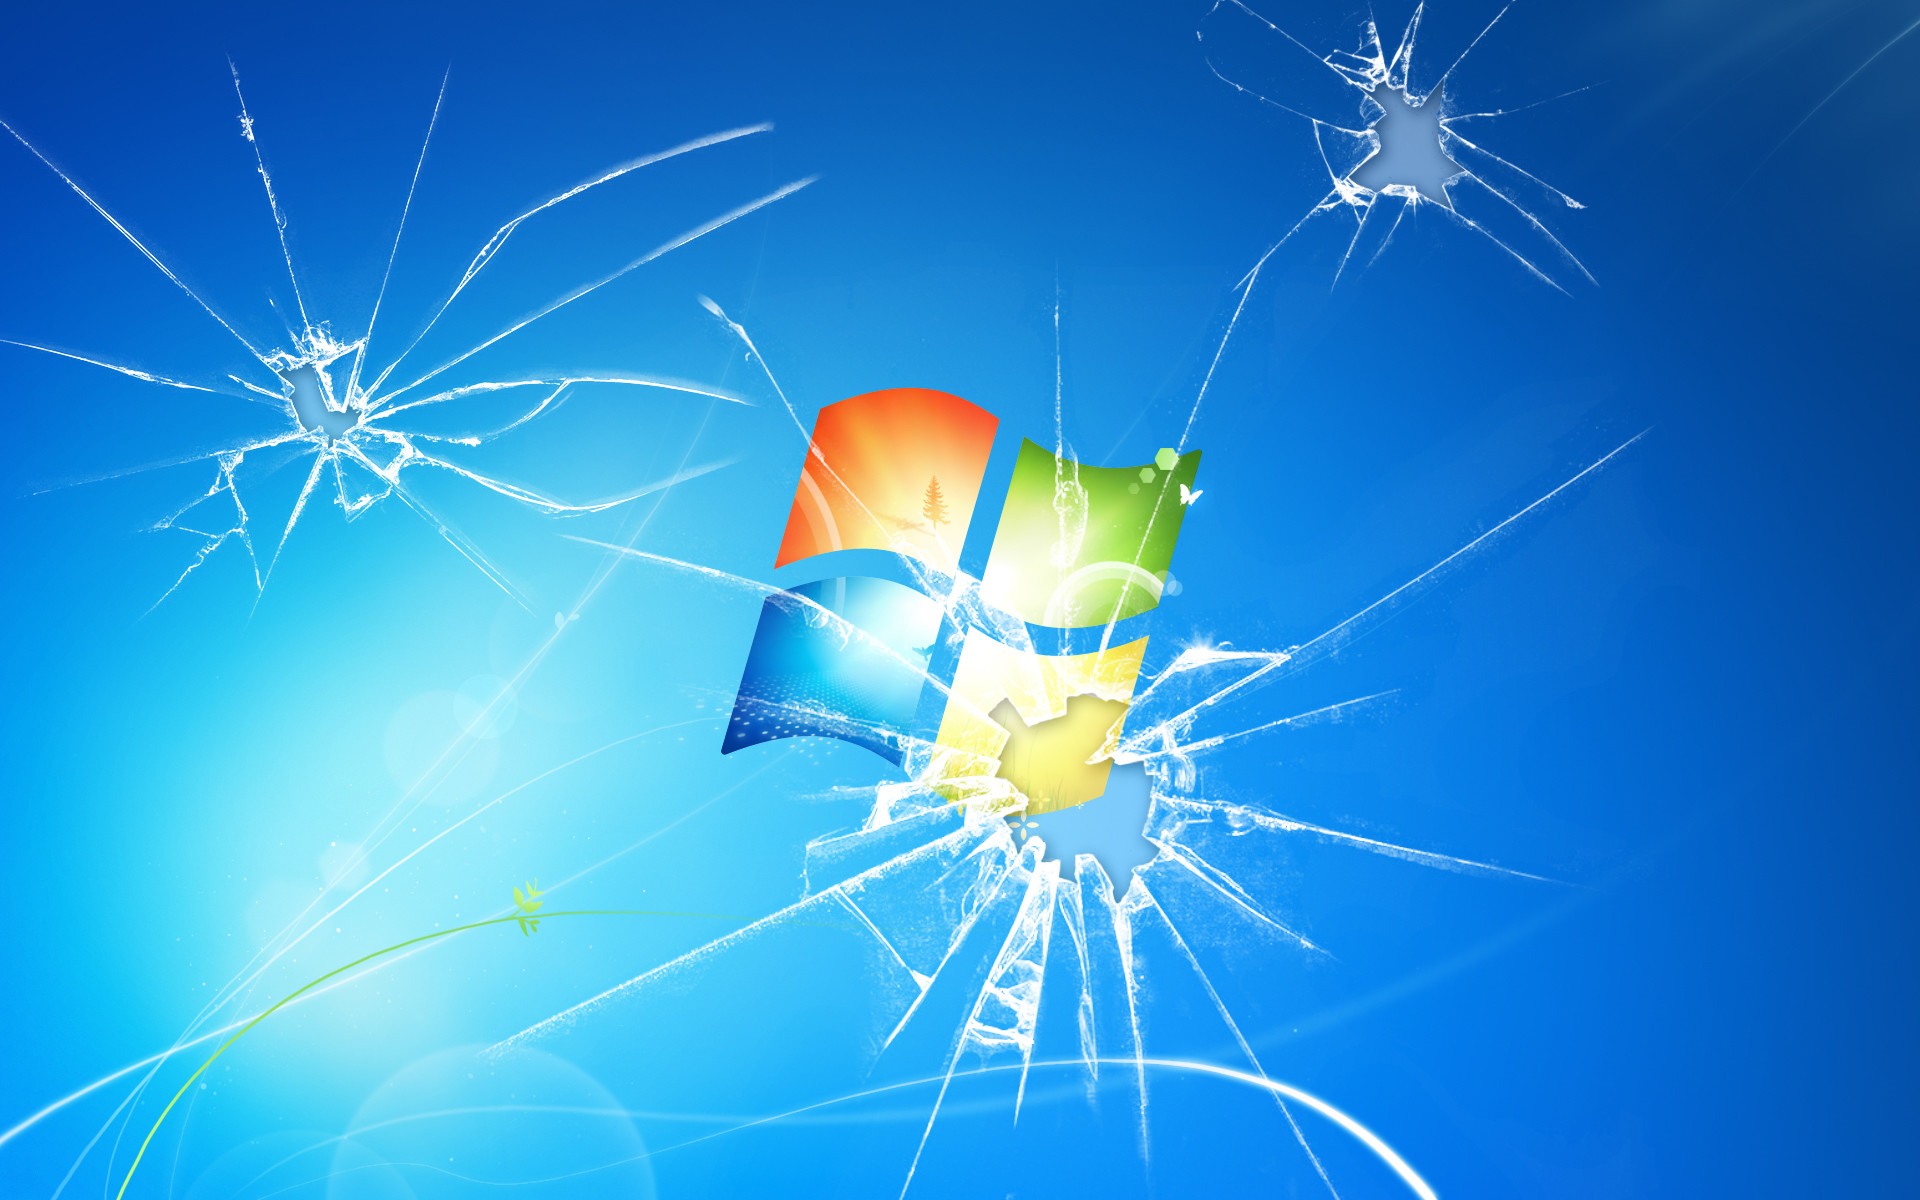 Hình nền Windows 7 bị vỡ: Đôi khi những thứ bị vỡ cũng có thể trở nên đẹp mắt, và hình nền Windows 7 không ngoại lệ. Hình nền này có một vẻ đẹp độc đáo, như một kiệt tác nghệ thuật. Nếu bạn thích sự khác biệt, hãy tải về hình nền Windows 7 bị vỡ ngay để trải nghiệm!